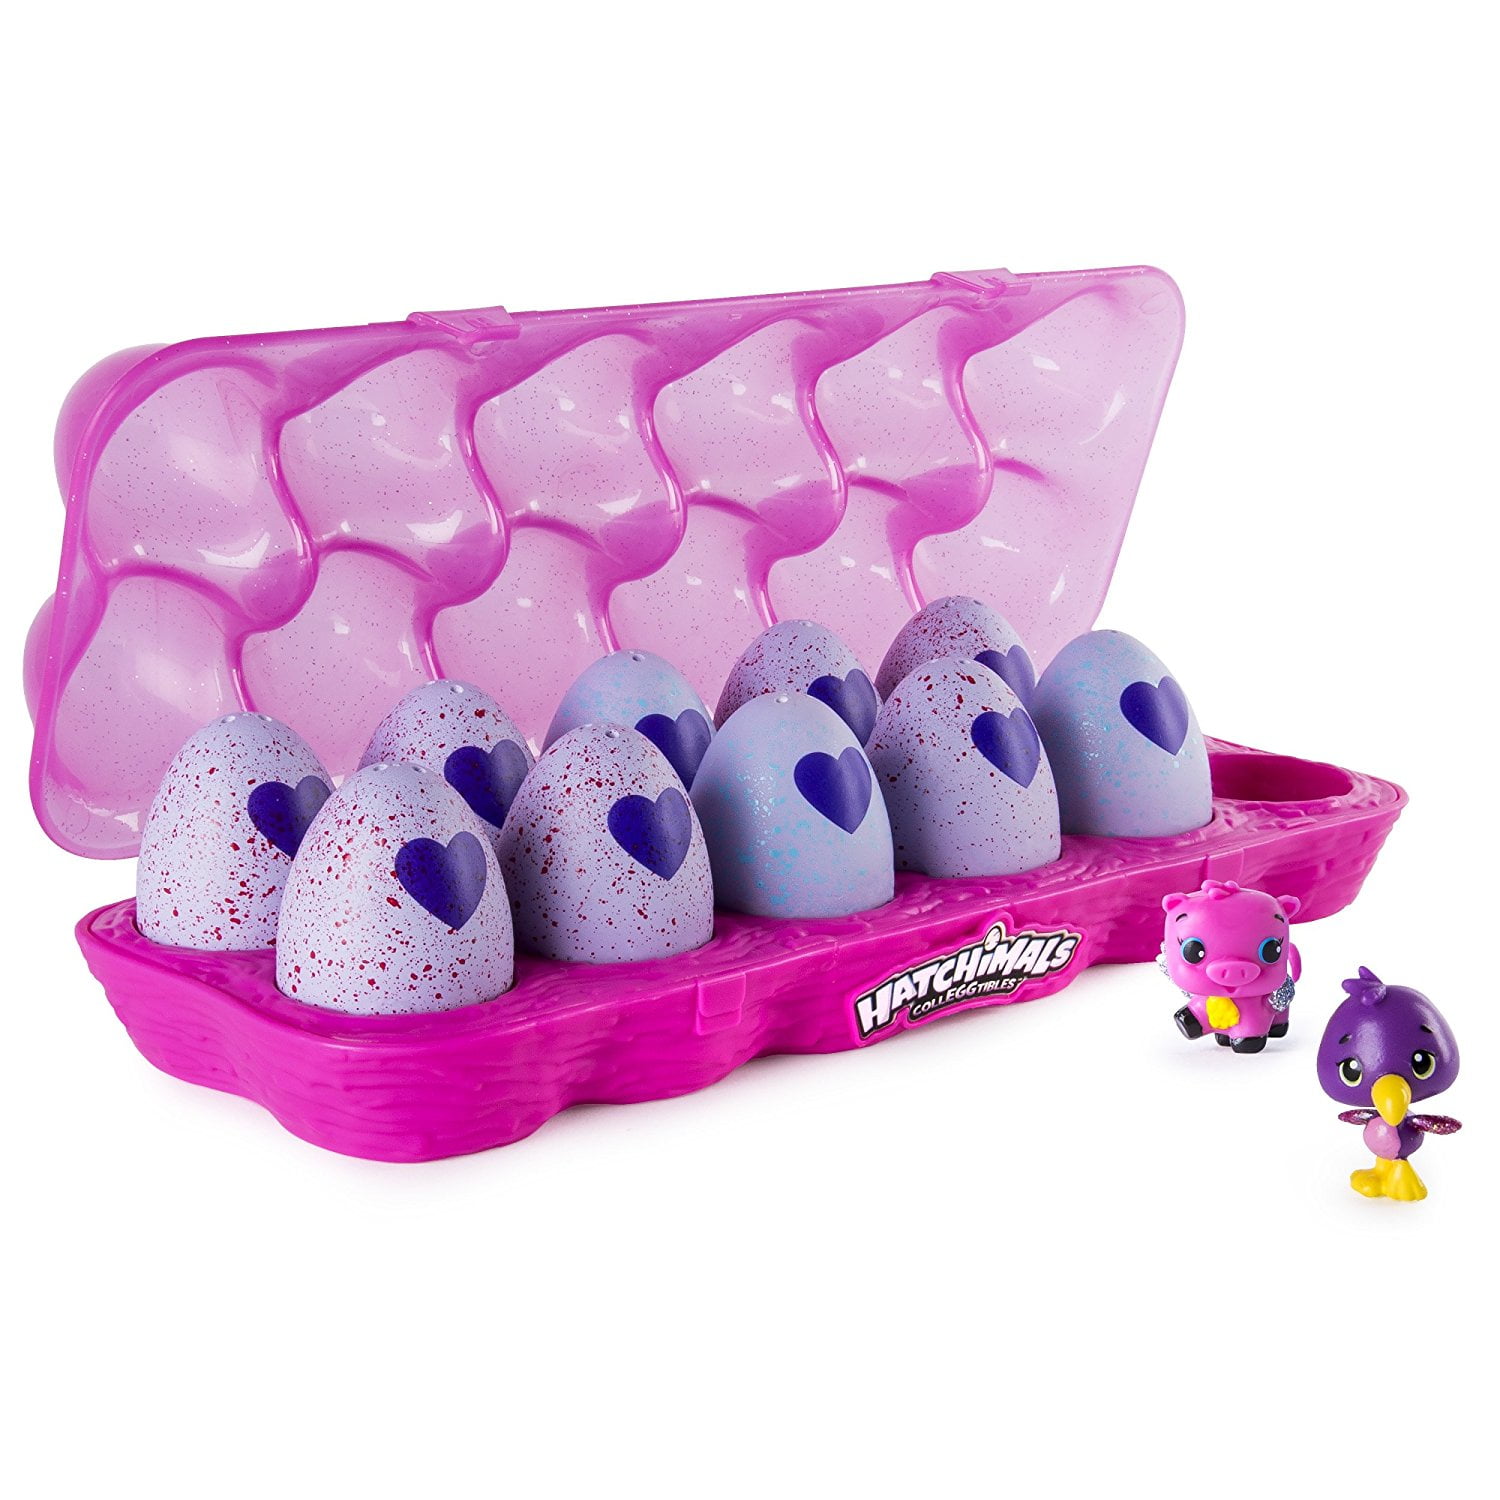 Hatchimals CollEGGtibles Brilho, 12-Pack com ovos embrulhados